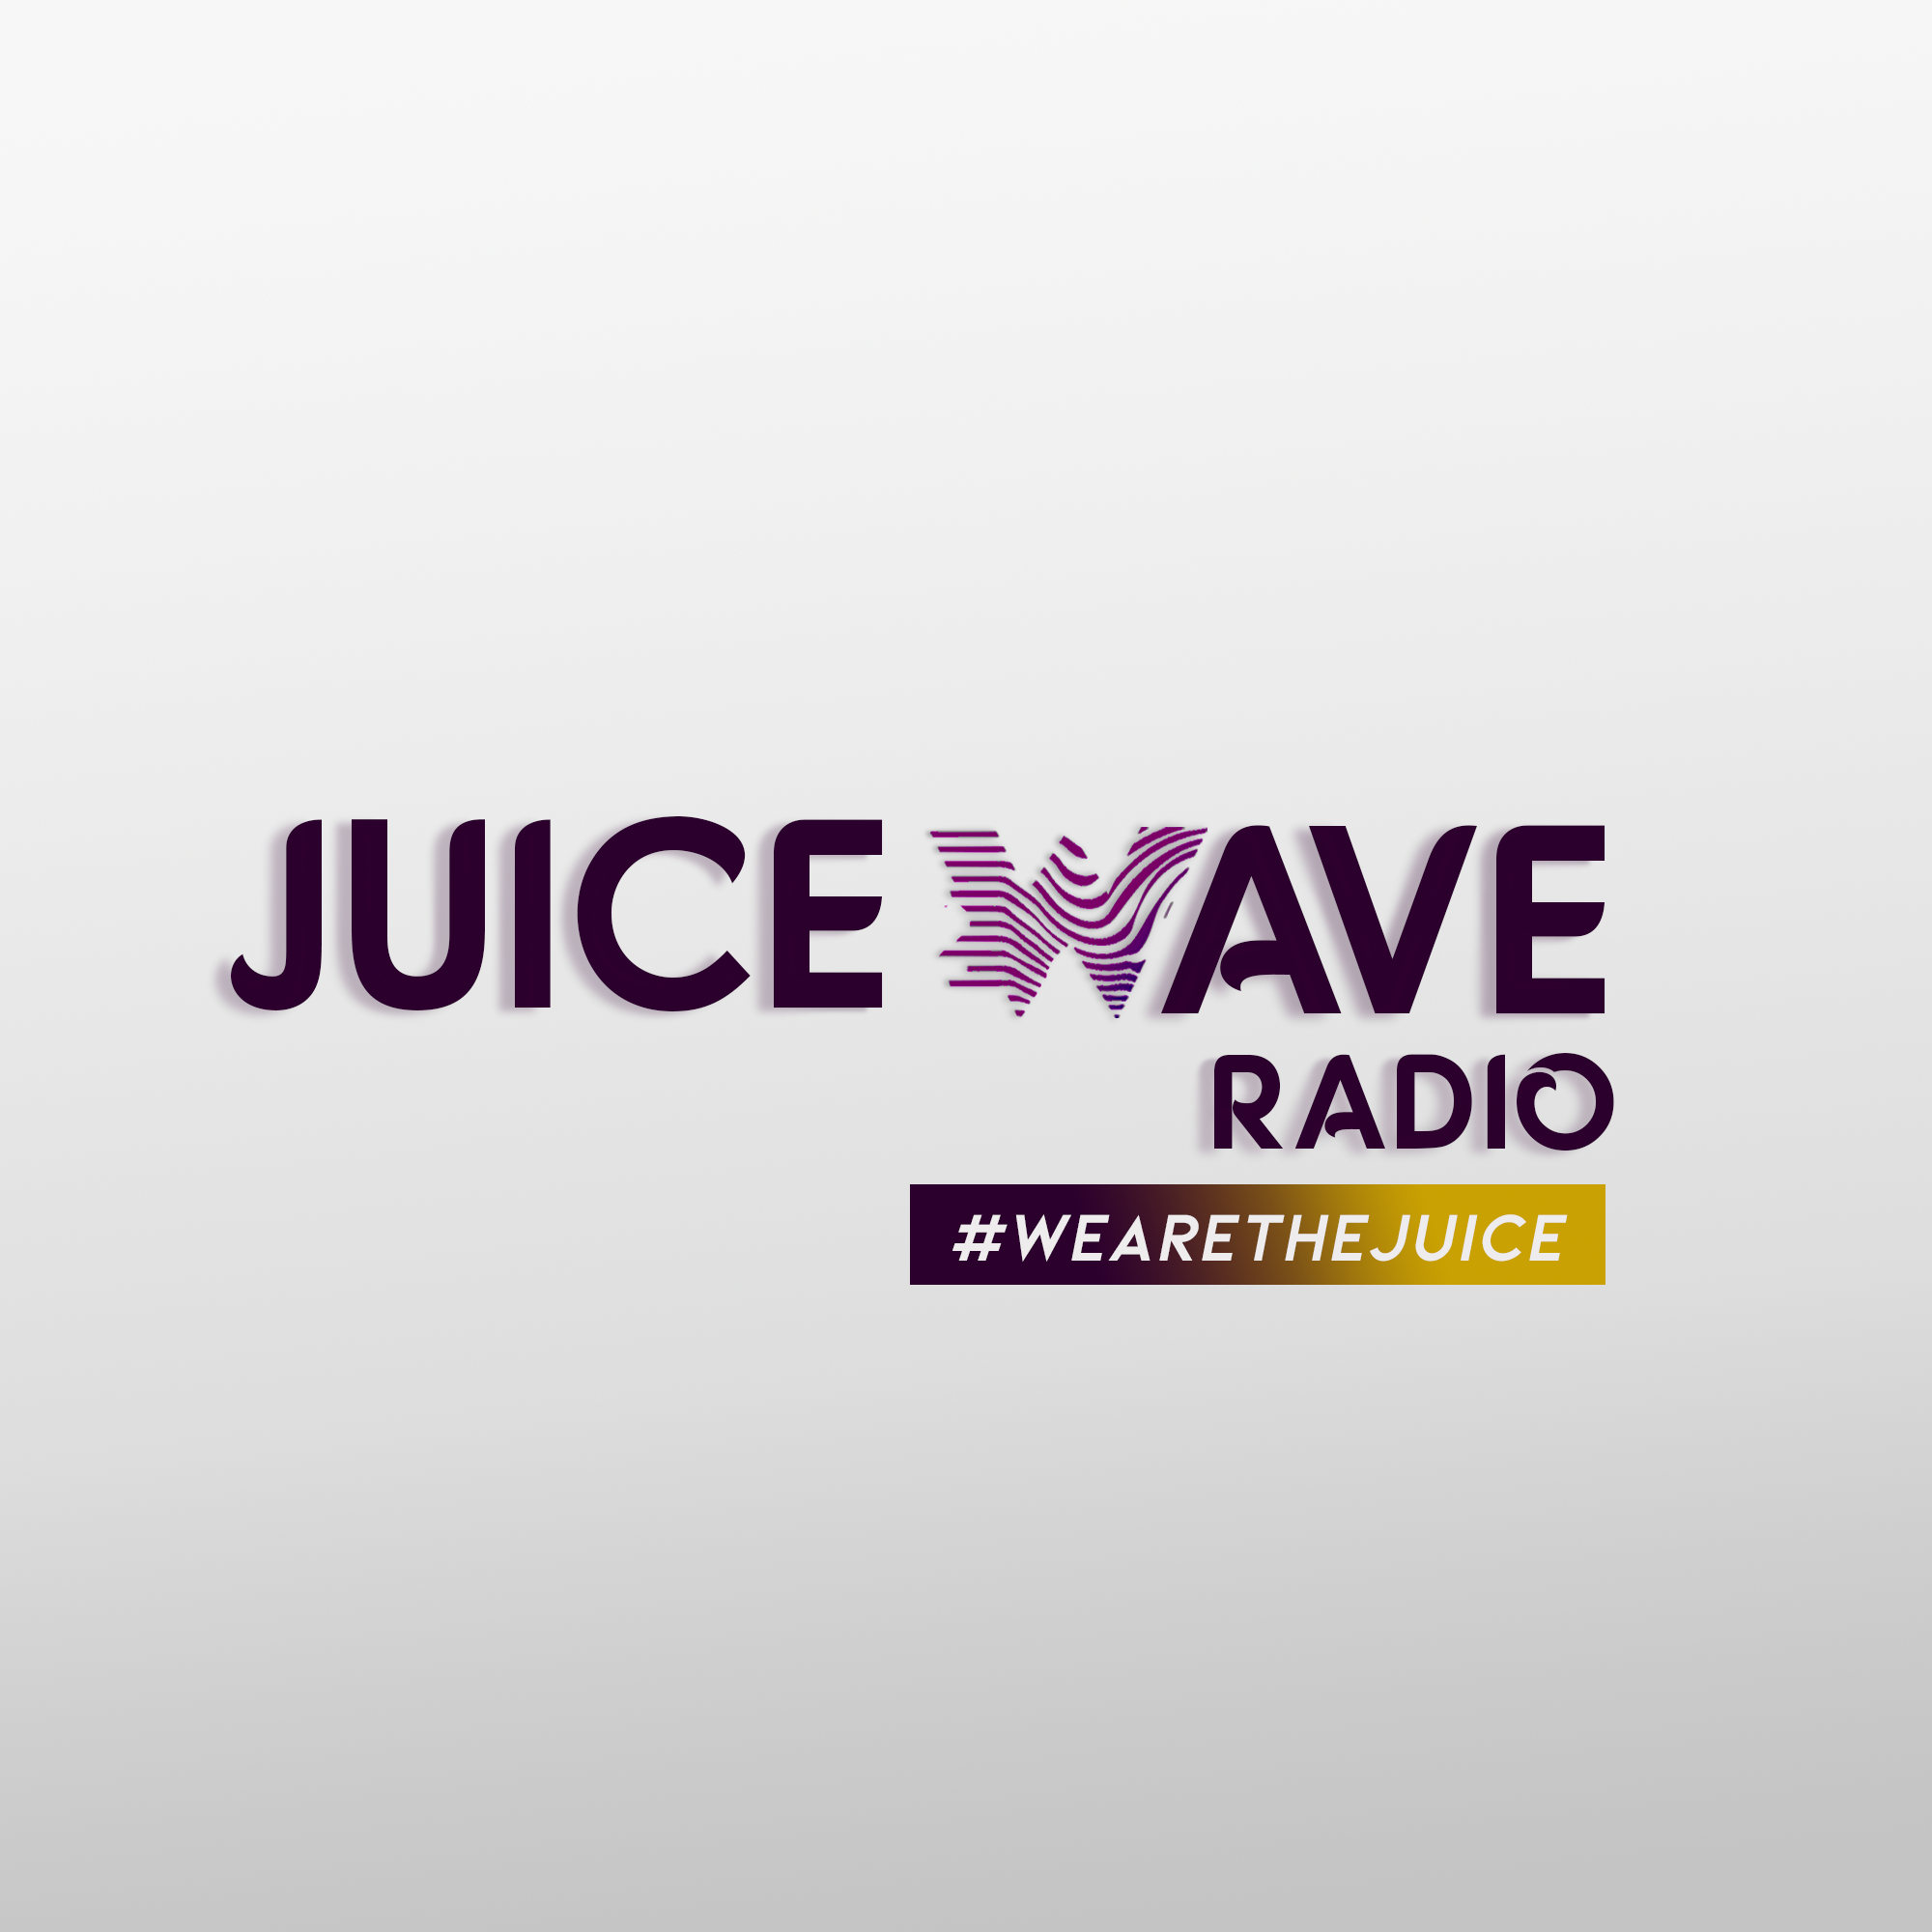 Juice wave radio